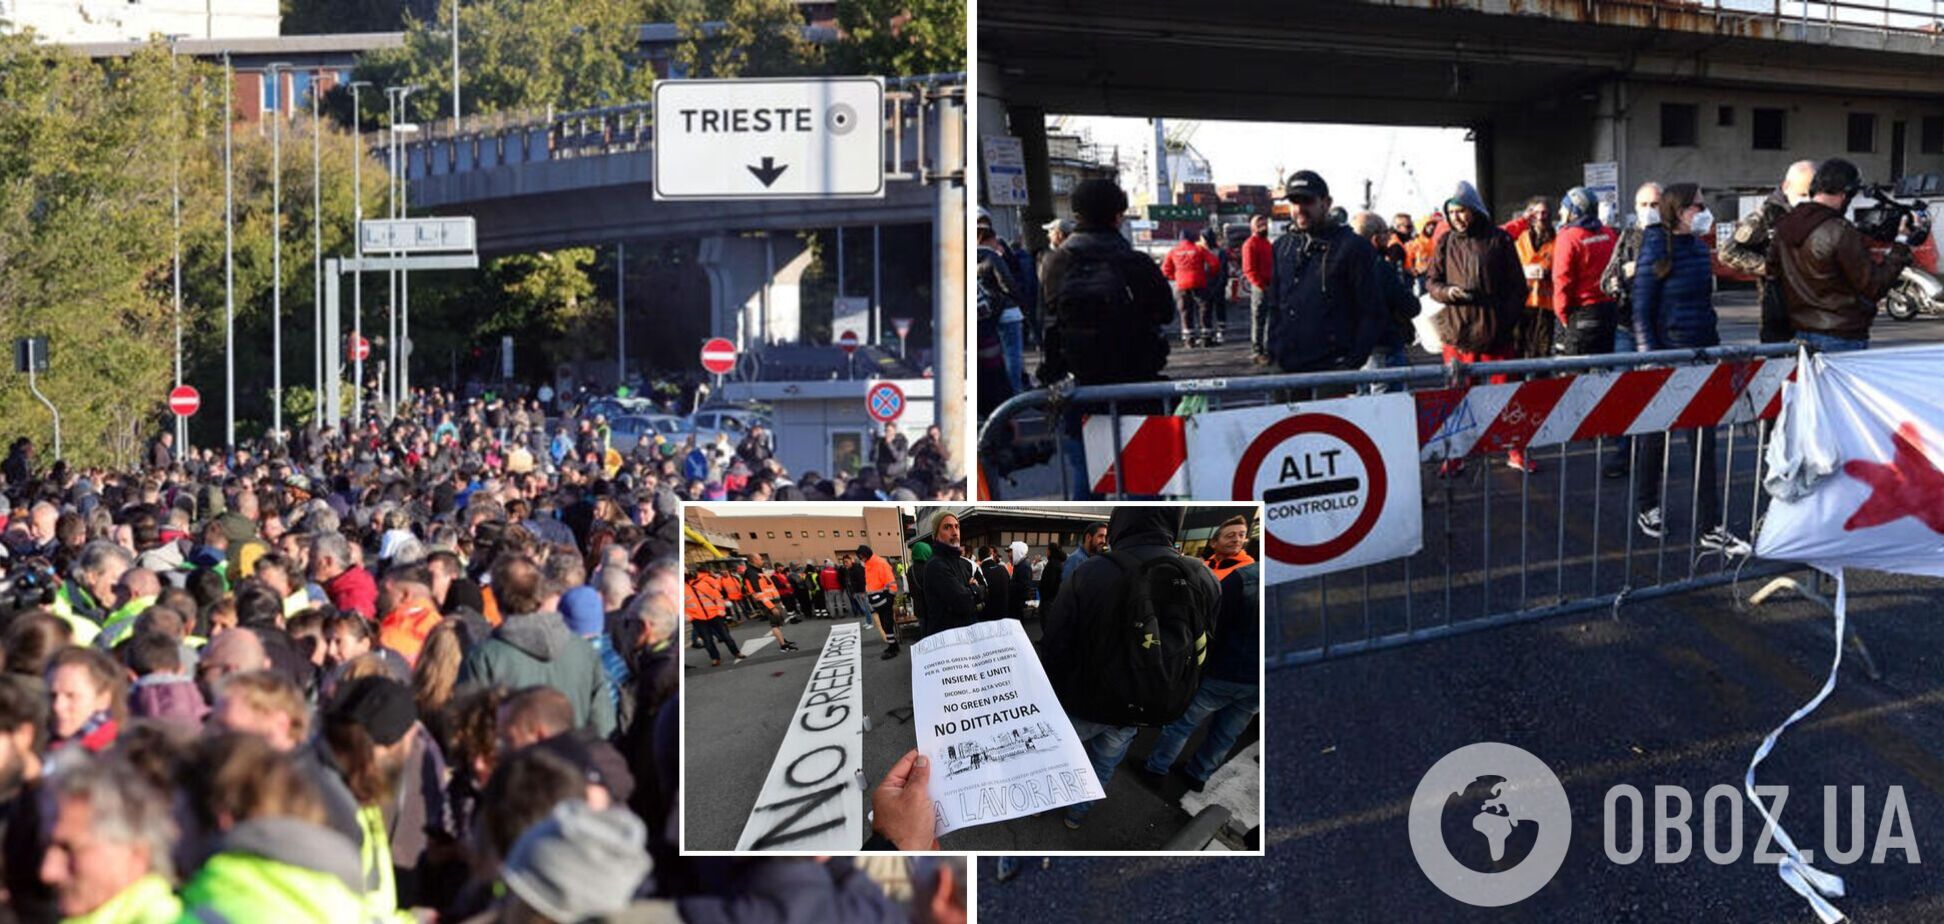 В Італії 'паспорта здоров'я' стали обов'язковими для всіх працівників: люди вийшли на протест. Фото та відео